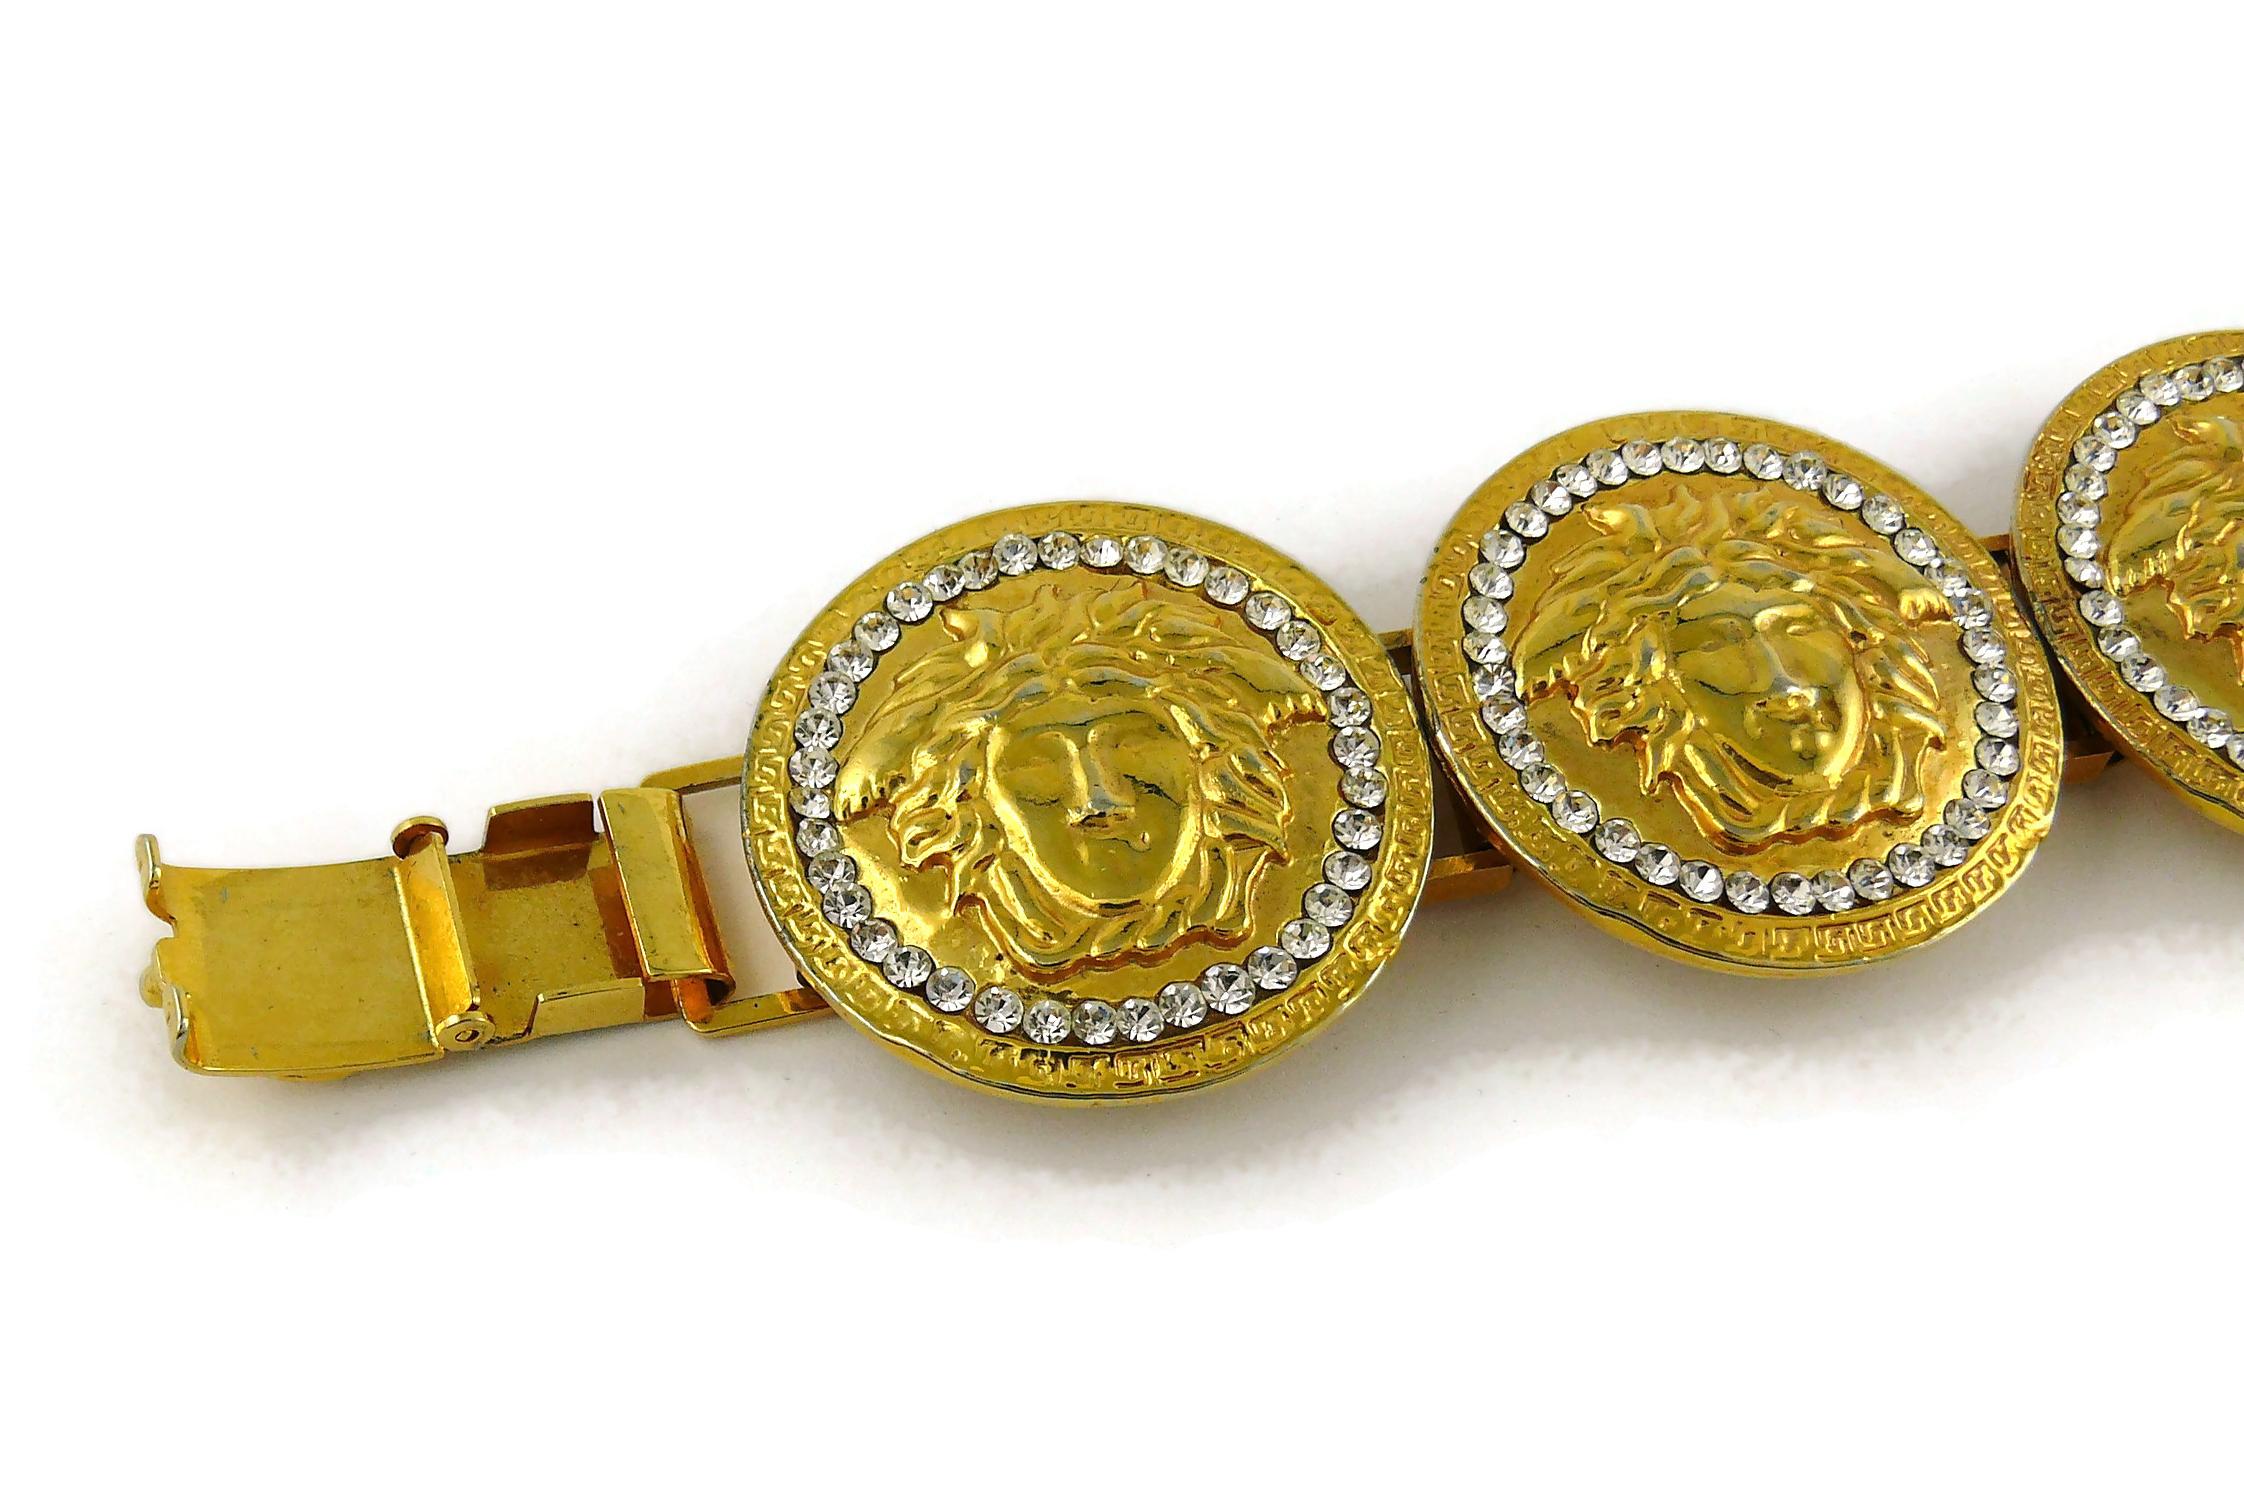 Gianni Versace Vintage Iconic Gold Toned Medusa Crystal Bracelet For Sale 1